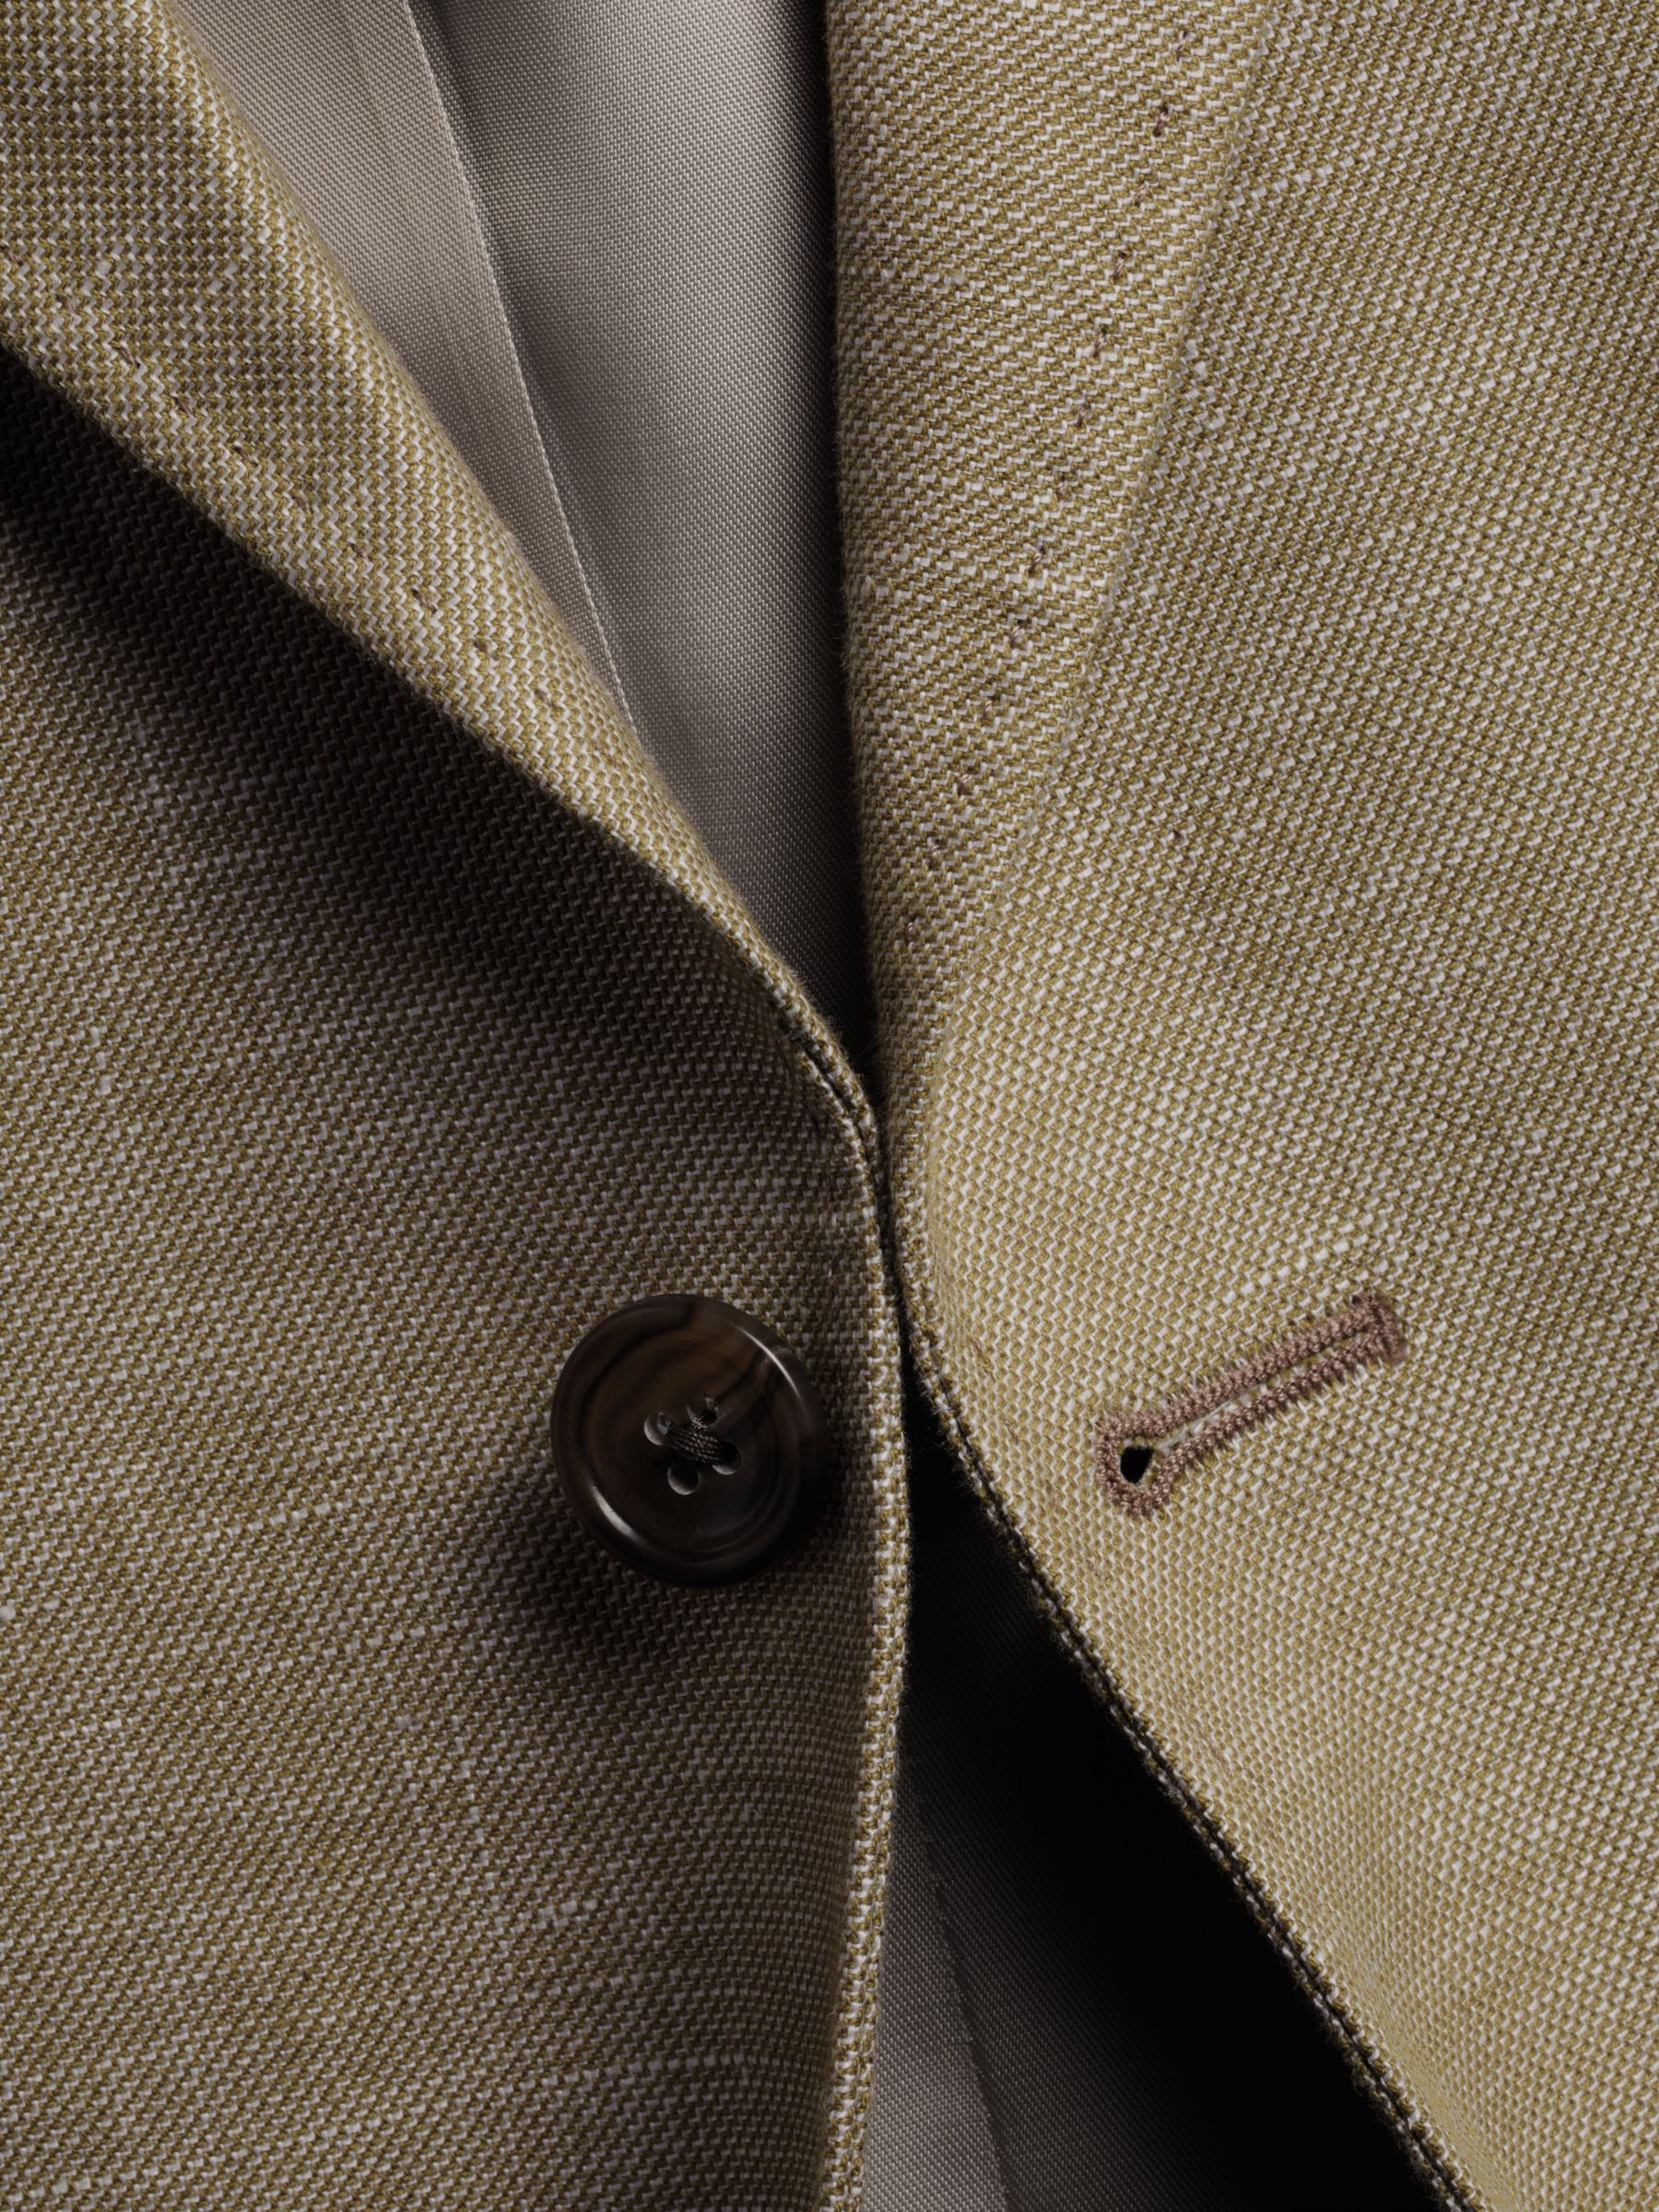 Buy Charles Tyrwhitt Linen Blend Slim Fit Jacket Online at johnlewis.com